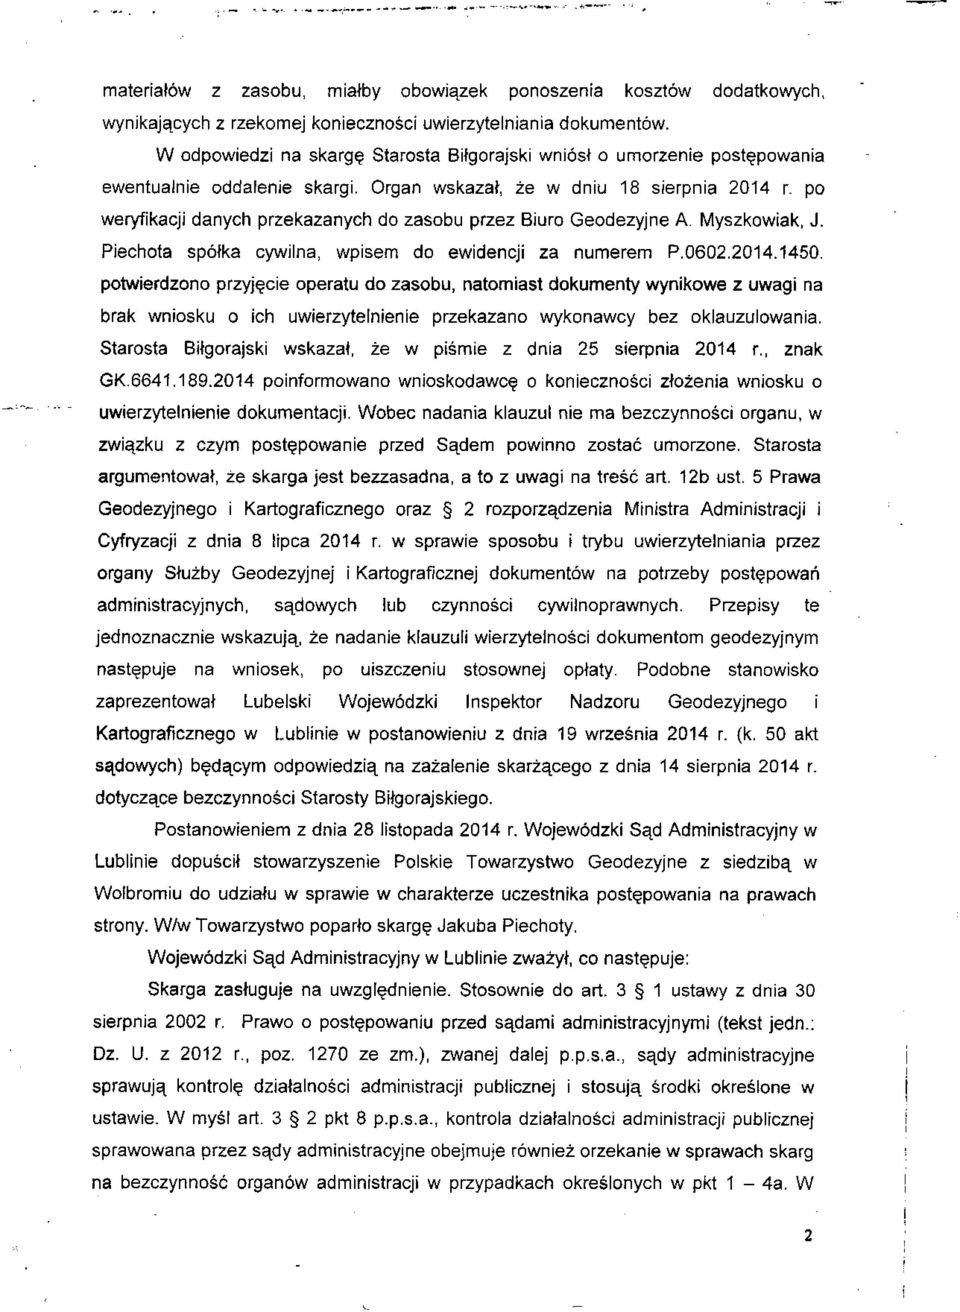 Organ wskazał, że w dniu 18 sierpnia 2014 r po weryfikacji danych przekazanych do zasobu przez Biuro Geodezyjne A. Myszkowiak, J. Piechota spółka cywilna, wpisem do ewidencji za numerem P.0602.2014.1450.